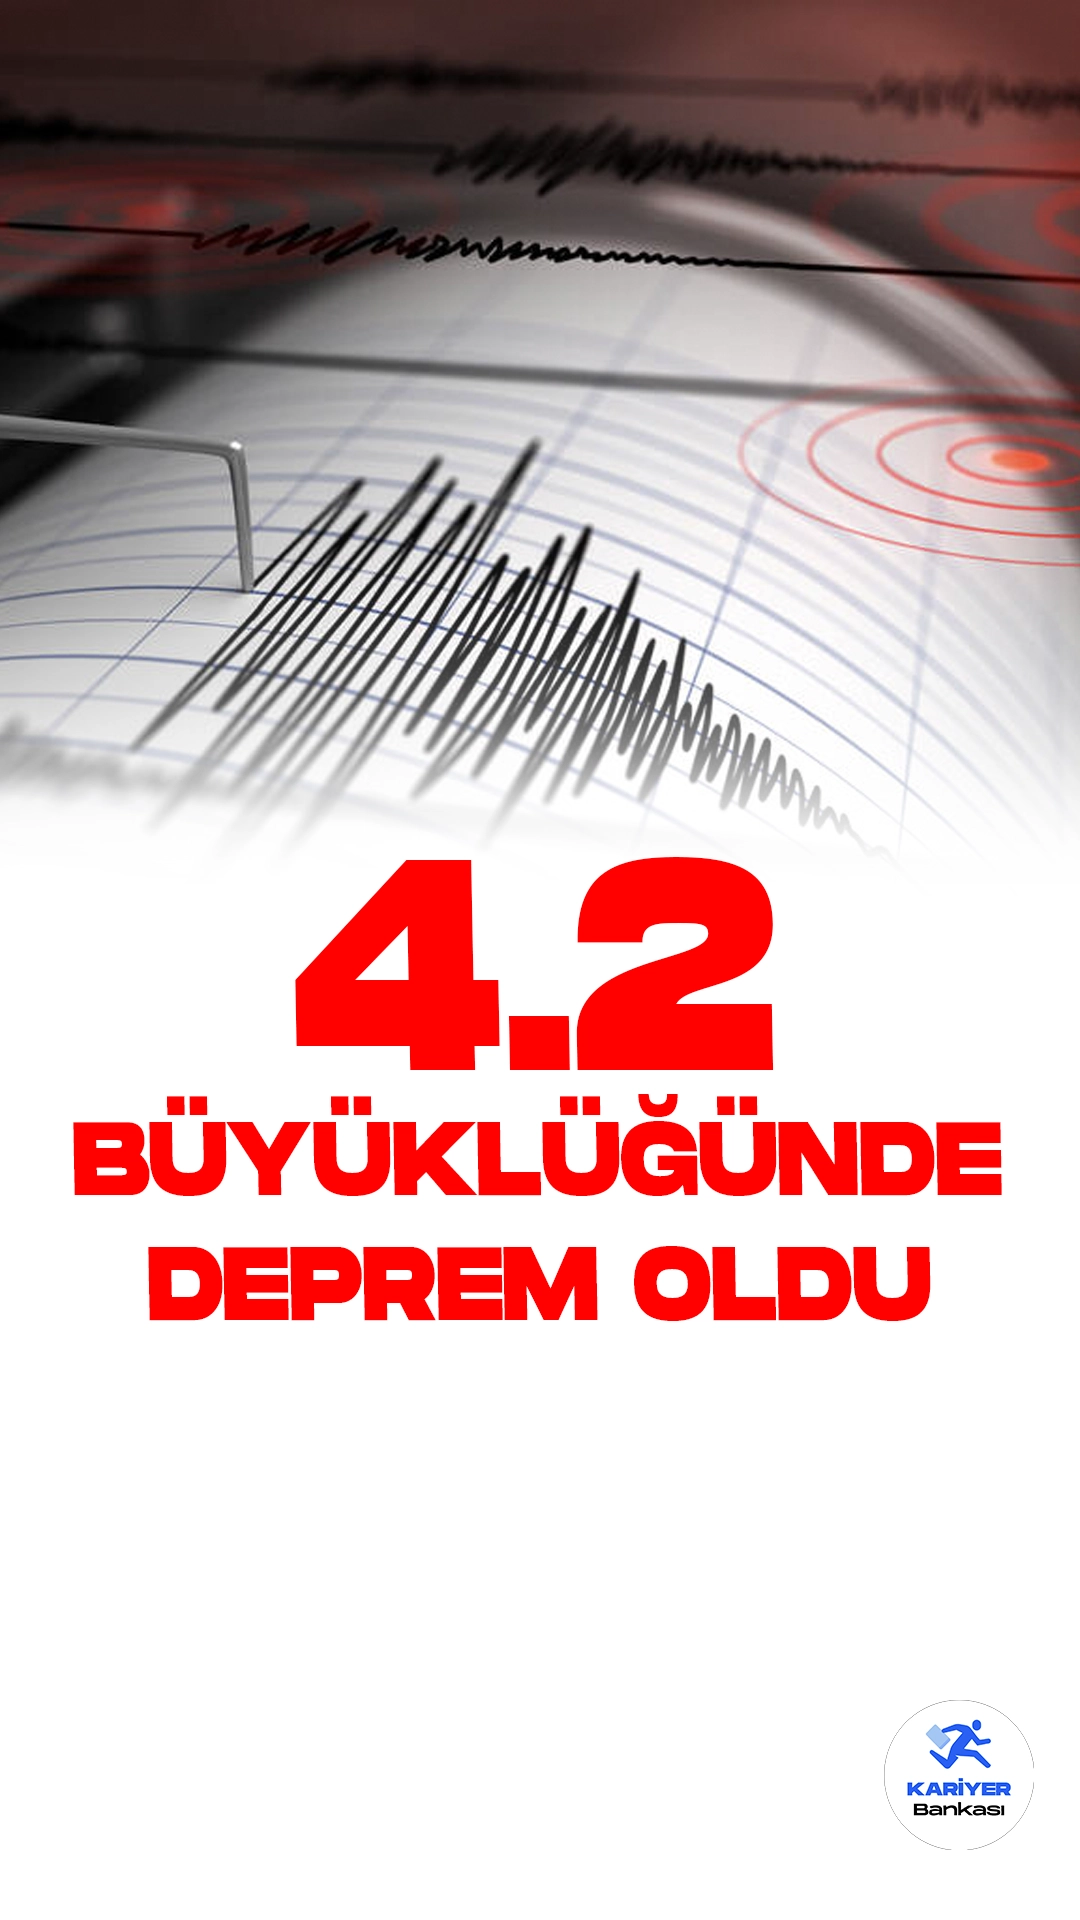 İzmir'de 4.2 Büyüklüğünde Deprem Oldu. İçişleri Bakanlığı Afet ve Acil Durum Yönetimi Başkanlığı Deprem Dairesi resmi sayfasından yayımlanan son dakika duyurusuna göre, İzmir'de 4.2 büyüklüğünde deprem meydana geldi.